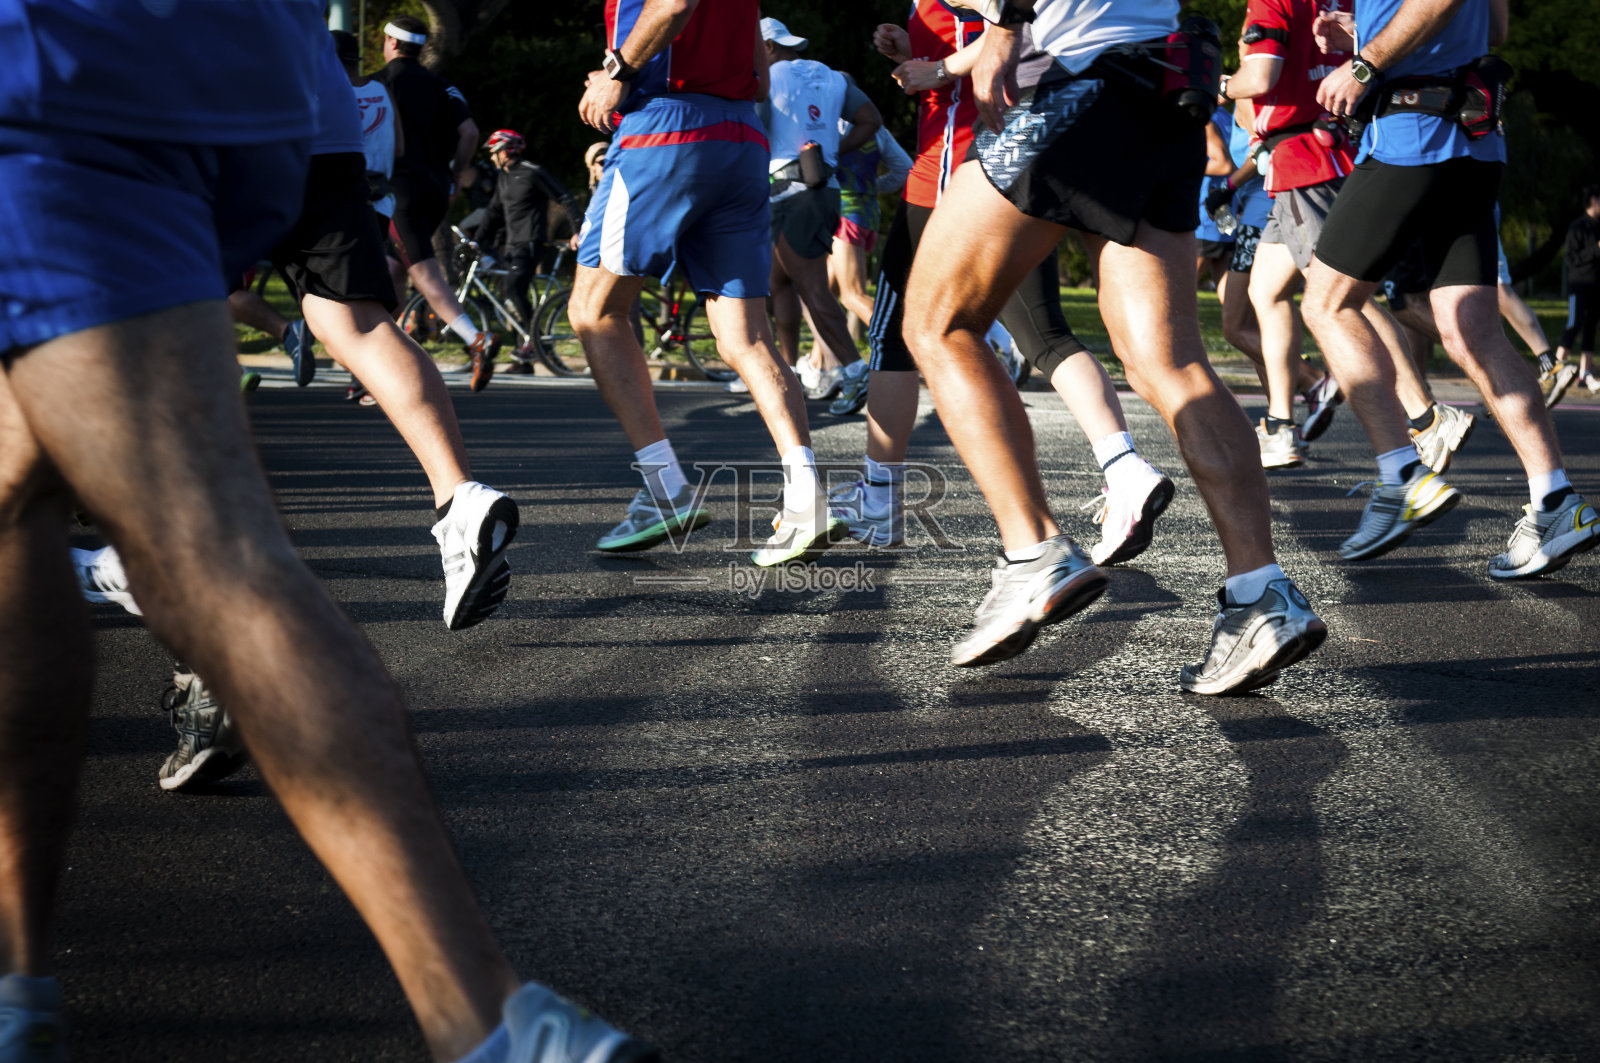 这张照片拍摄的是马拉松选手的鞋子在柏油路上照片摄影图片